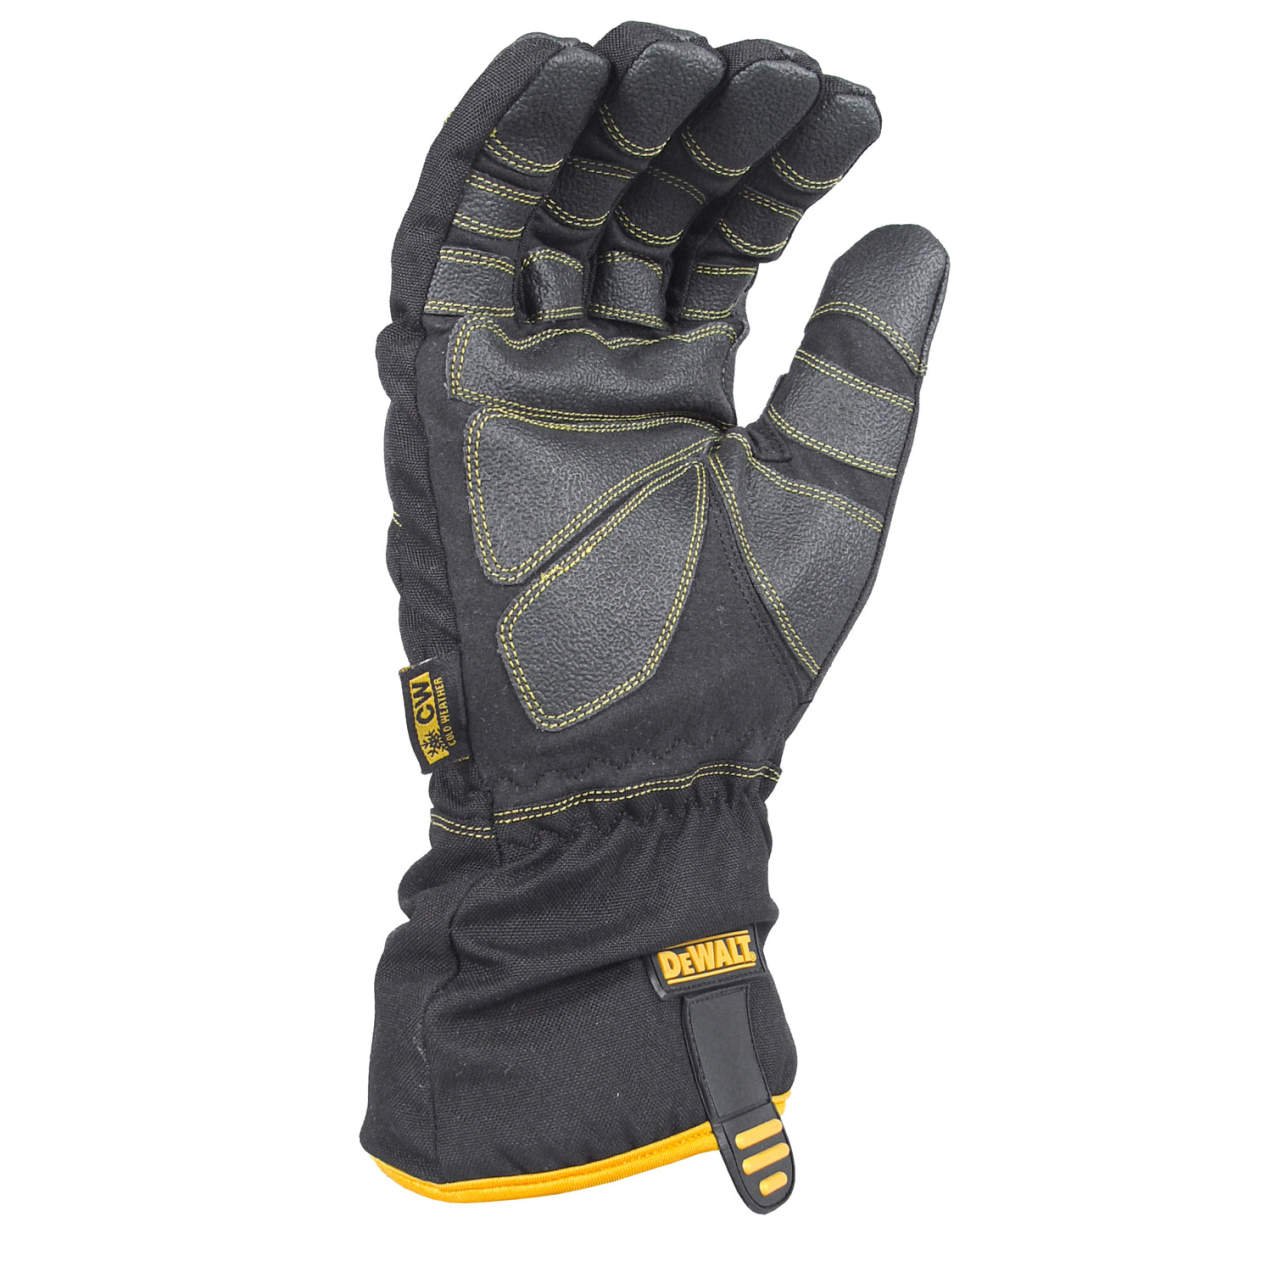 DeWalt DPG750 100g Insulated Extreme Condition Cold Weather Work Glove